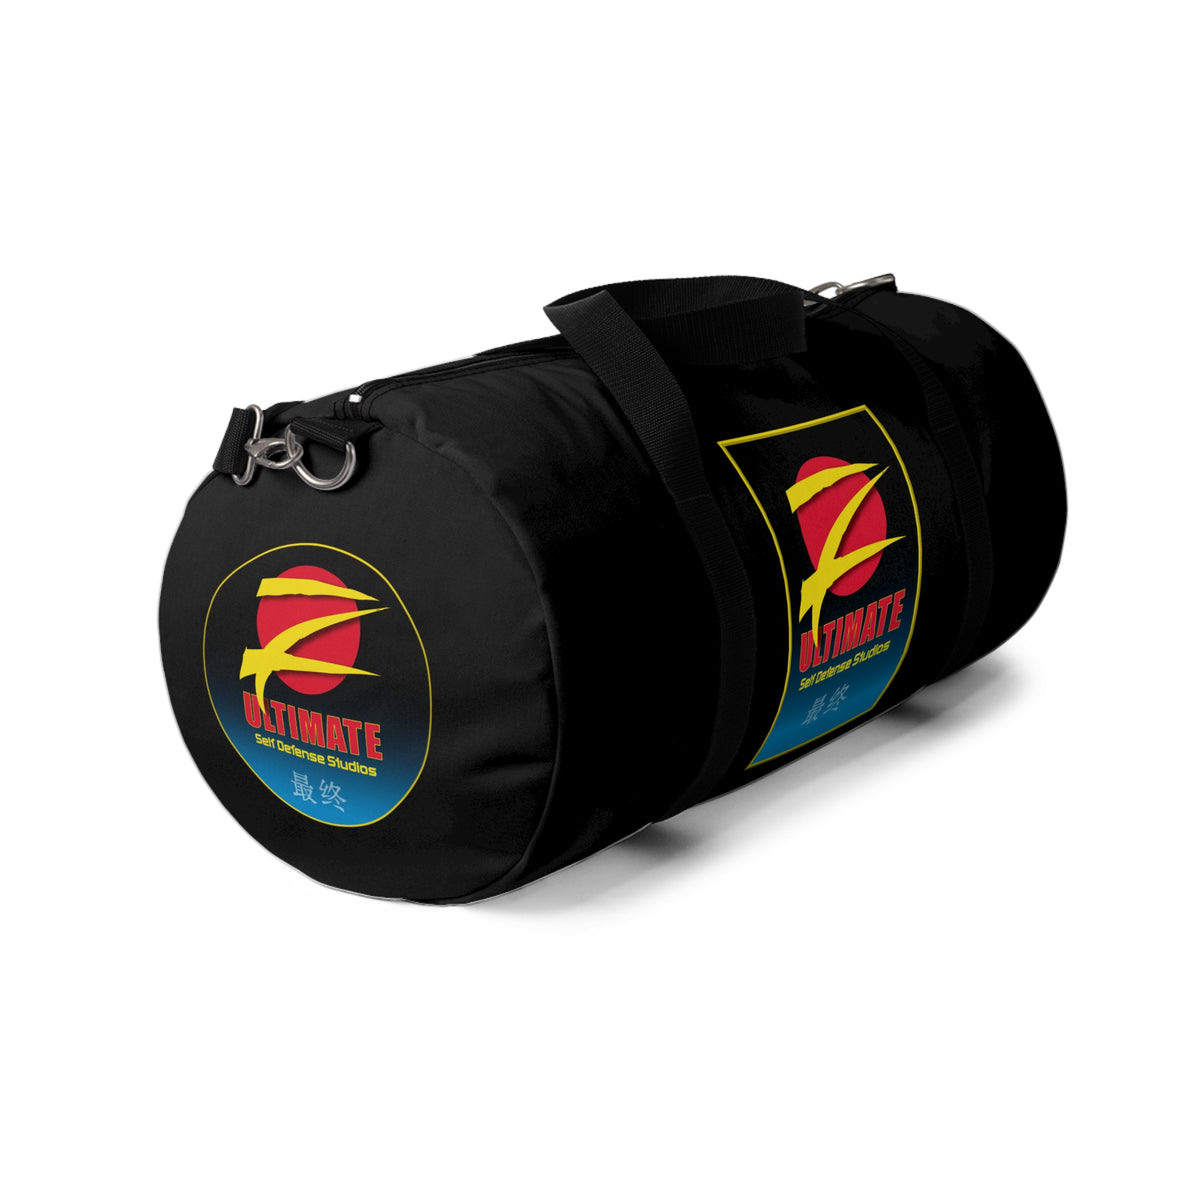 Z-Ultimate Black Duffel Bag - Black